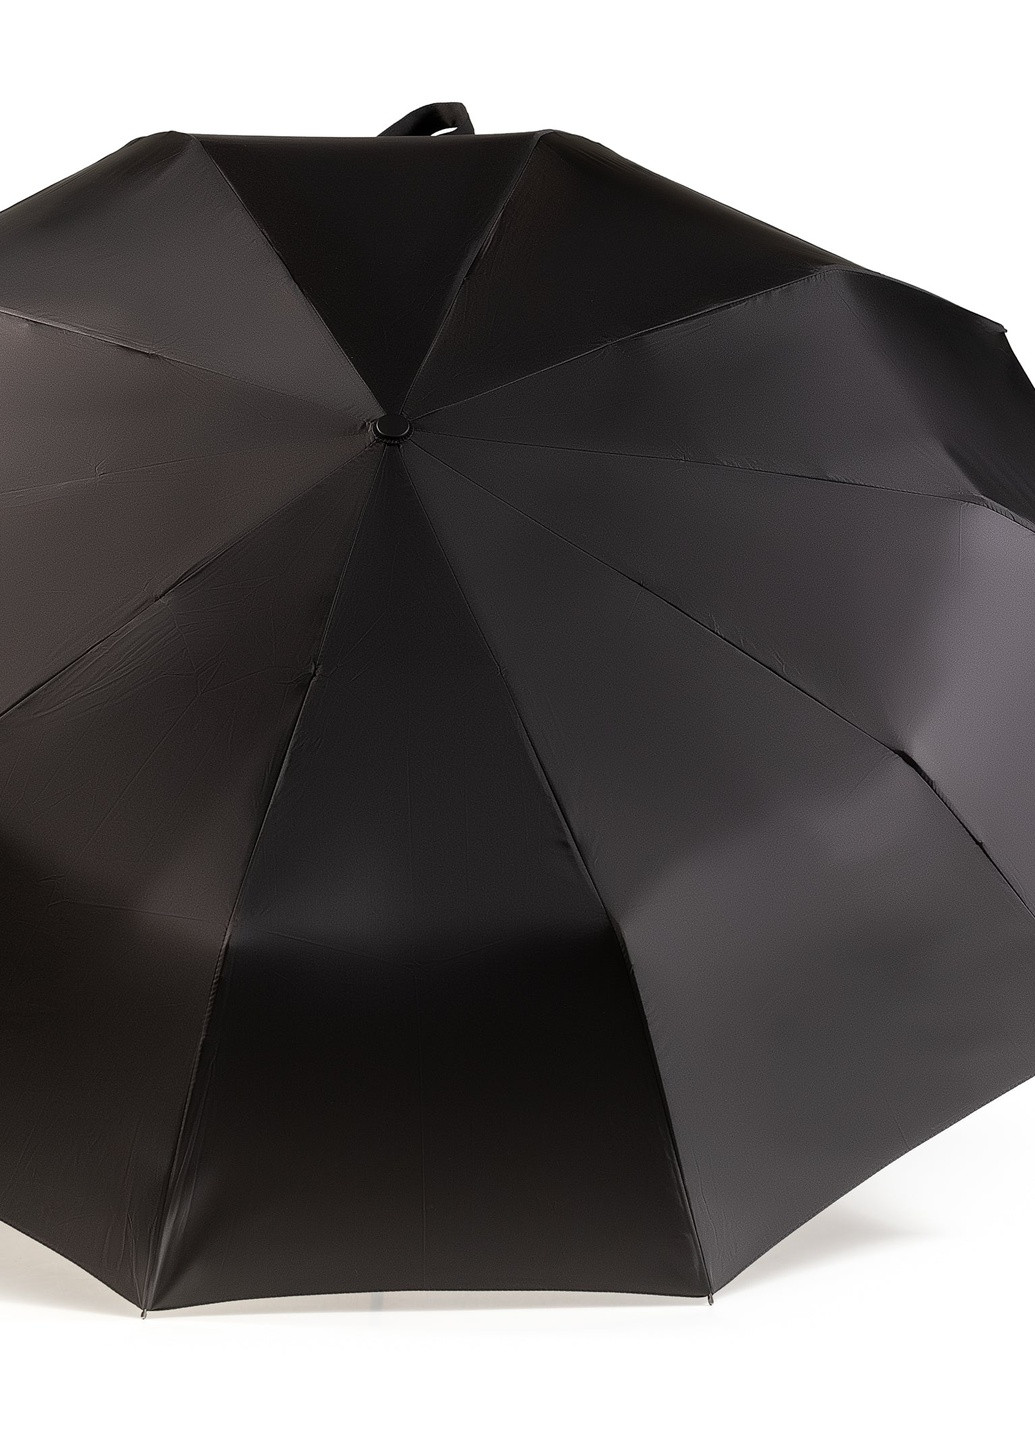 Зонт Ring складной 10-ти спицевый, полный автомат 115см черний Krago (258994520)